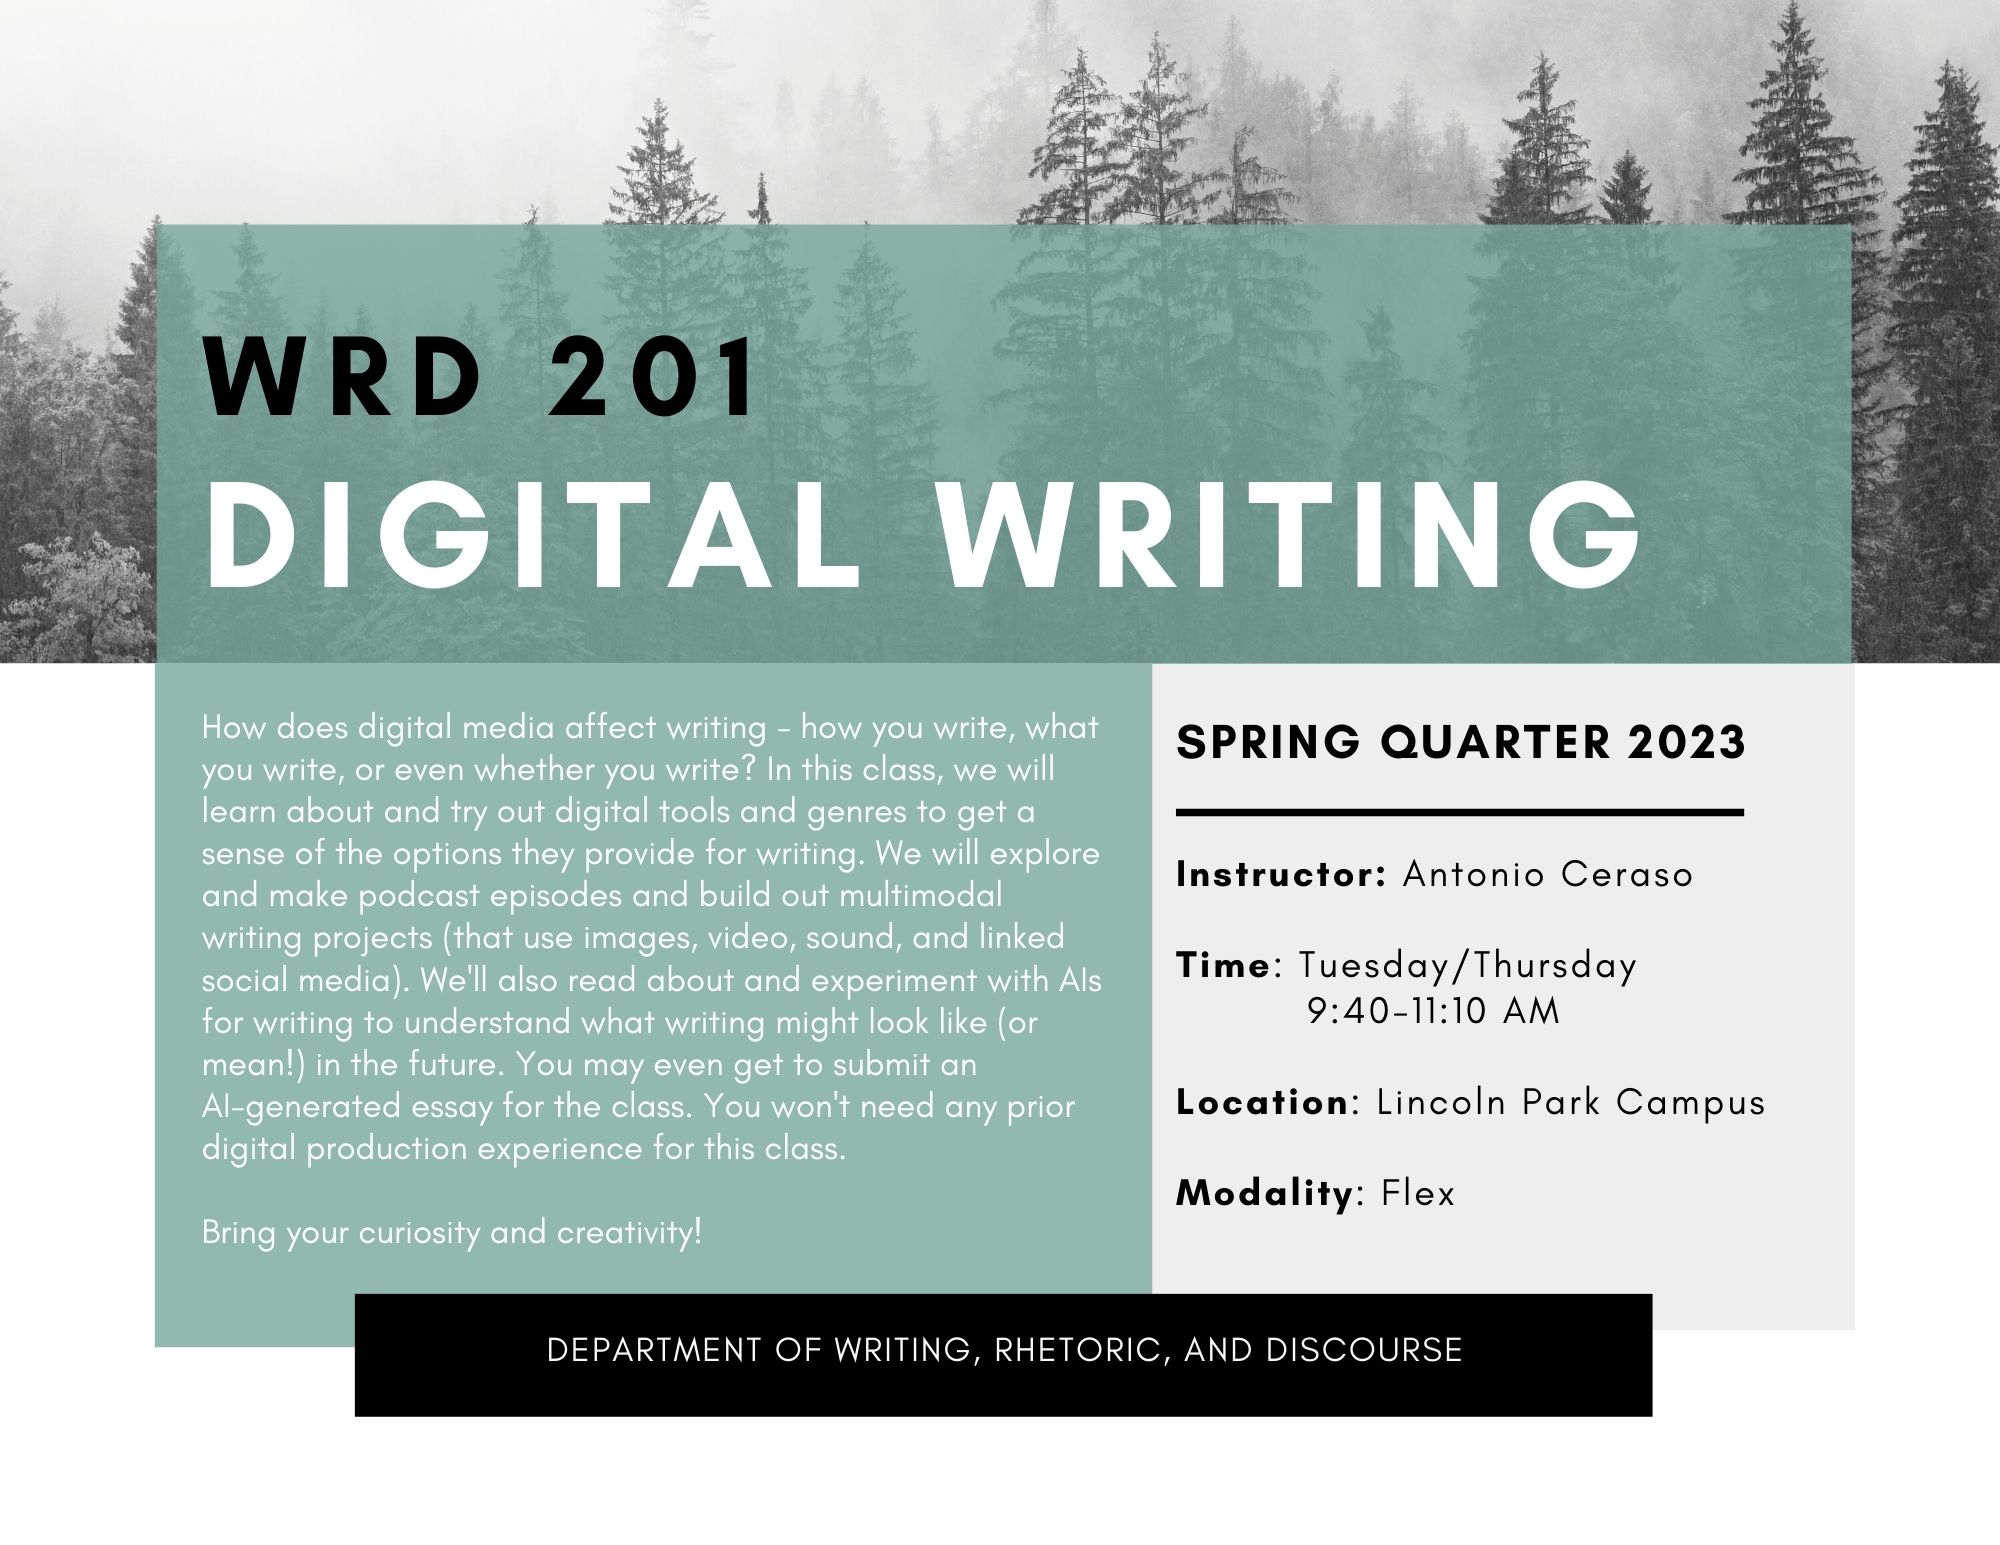 WRD 201: Digital Writing